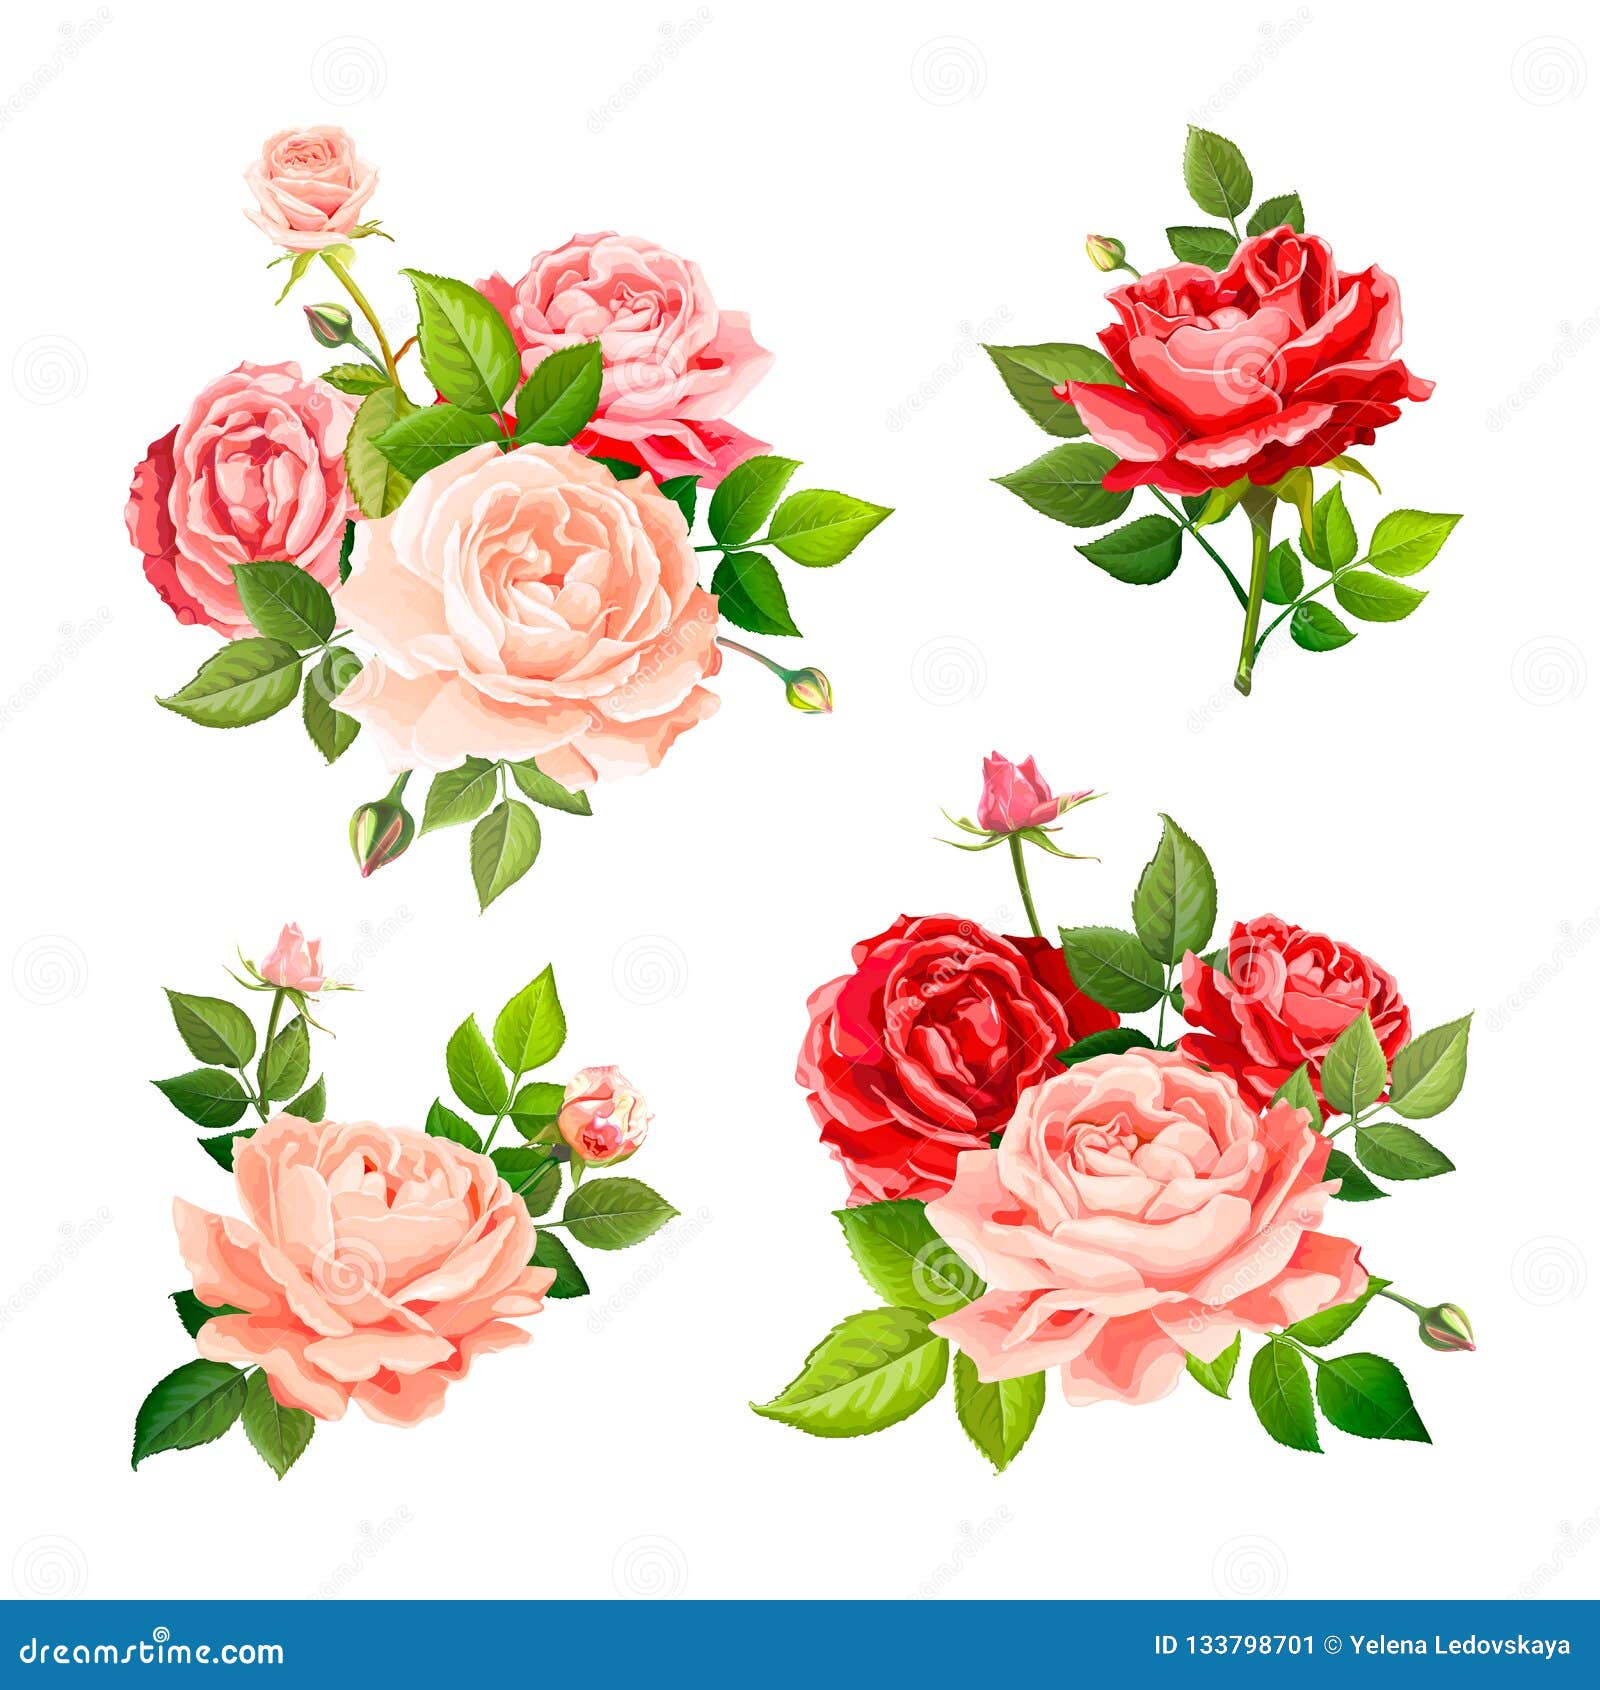 Lovely rose flower stock vector. Illustration of card - 133798701